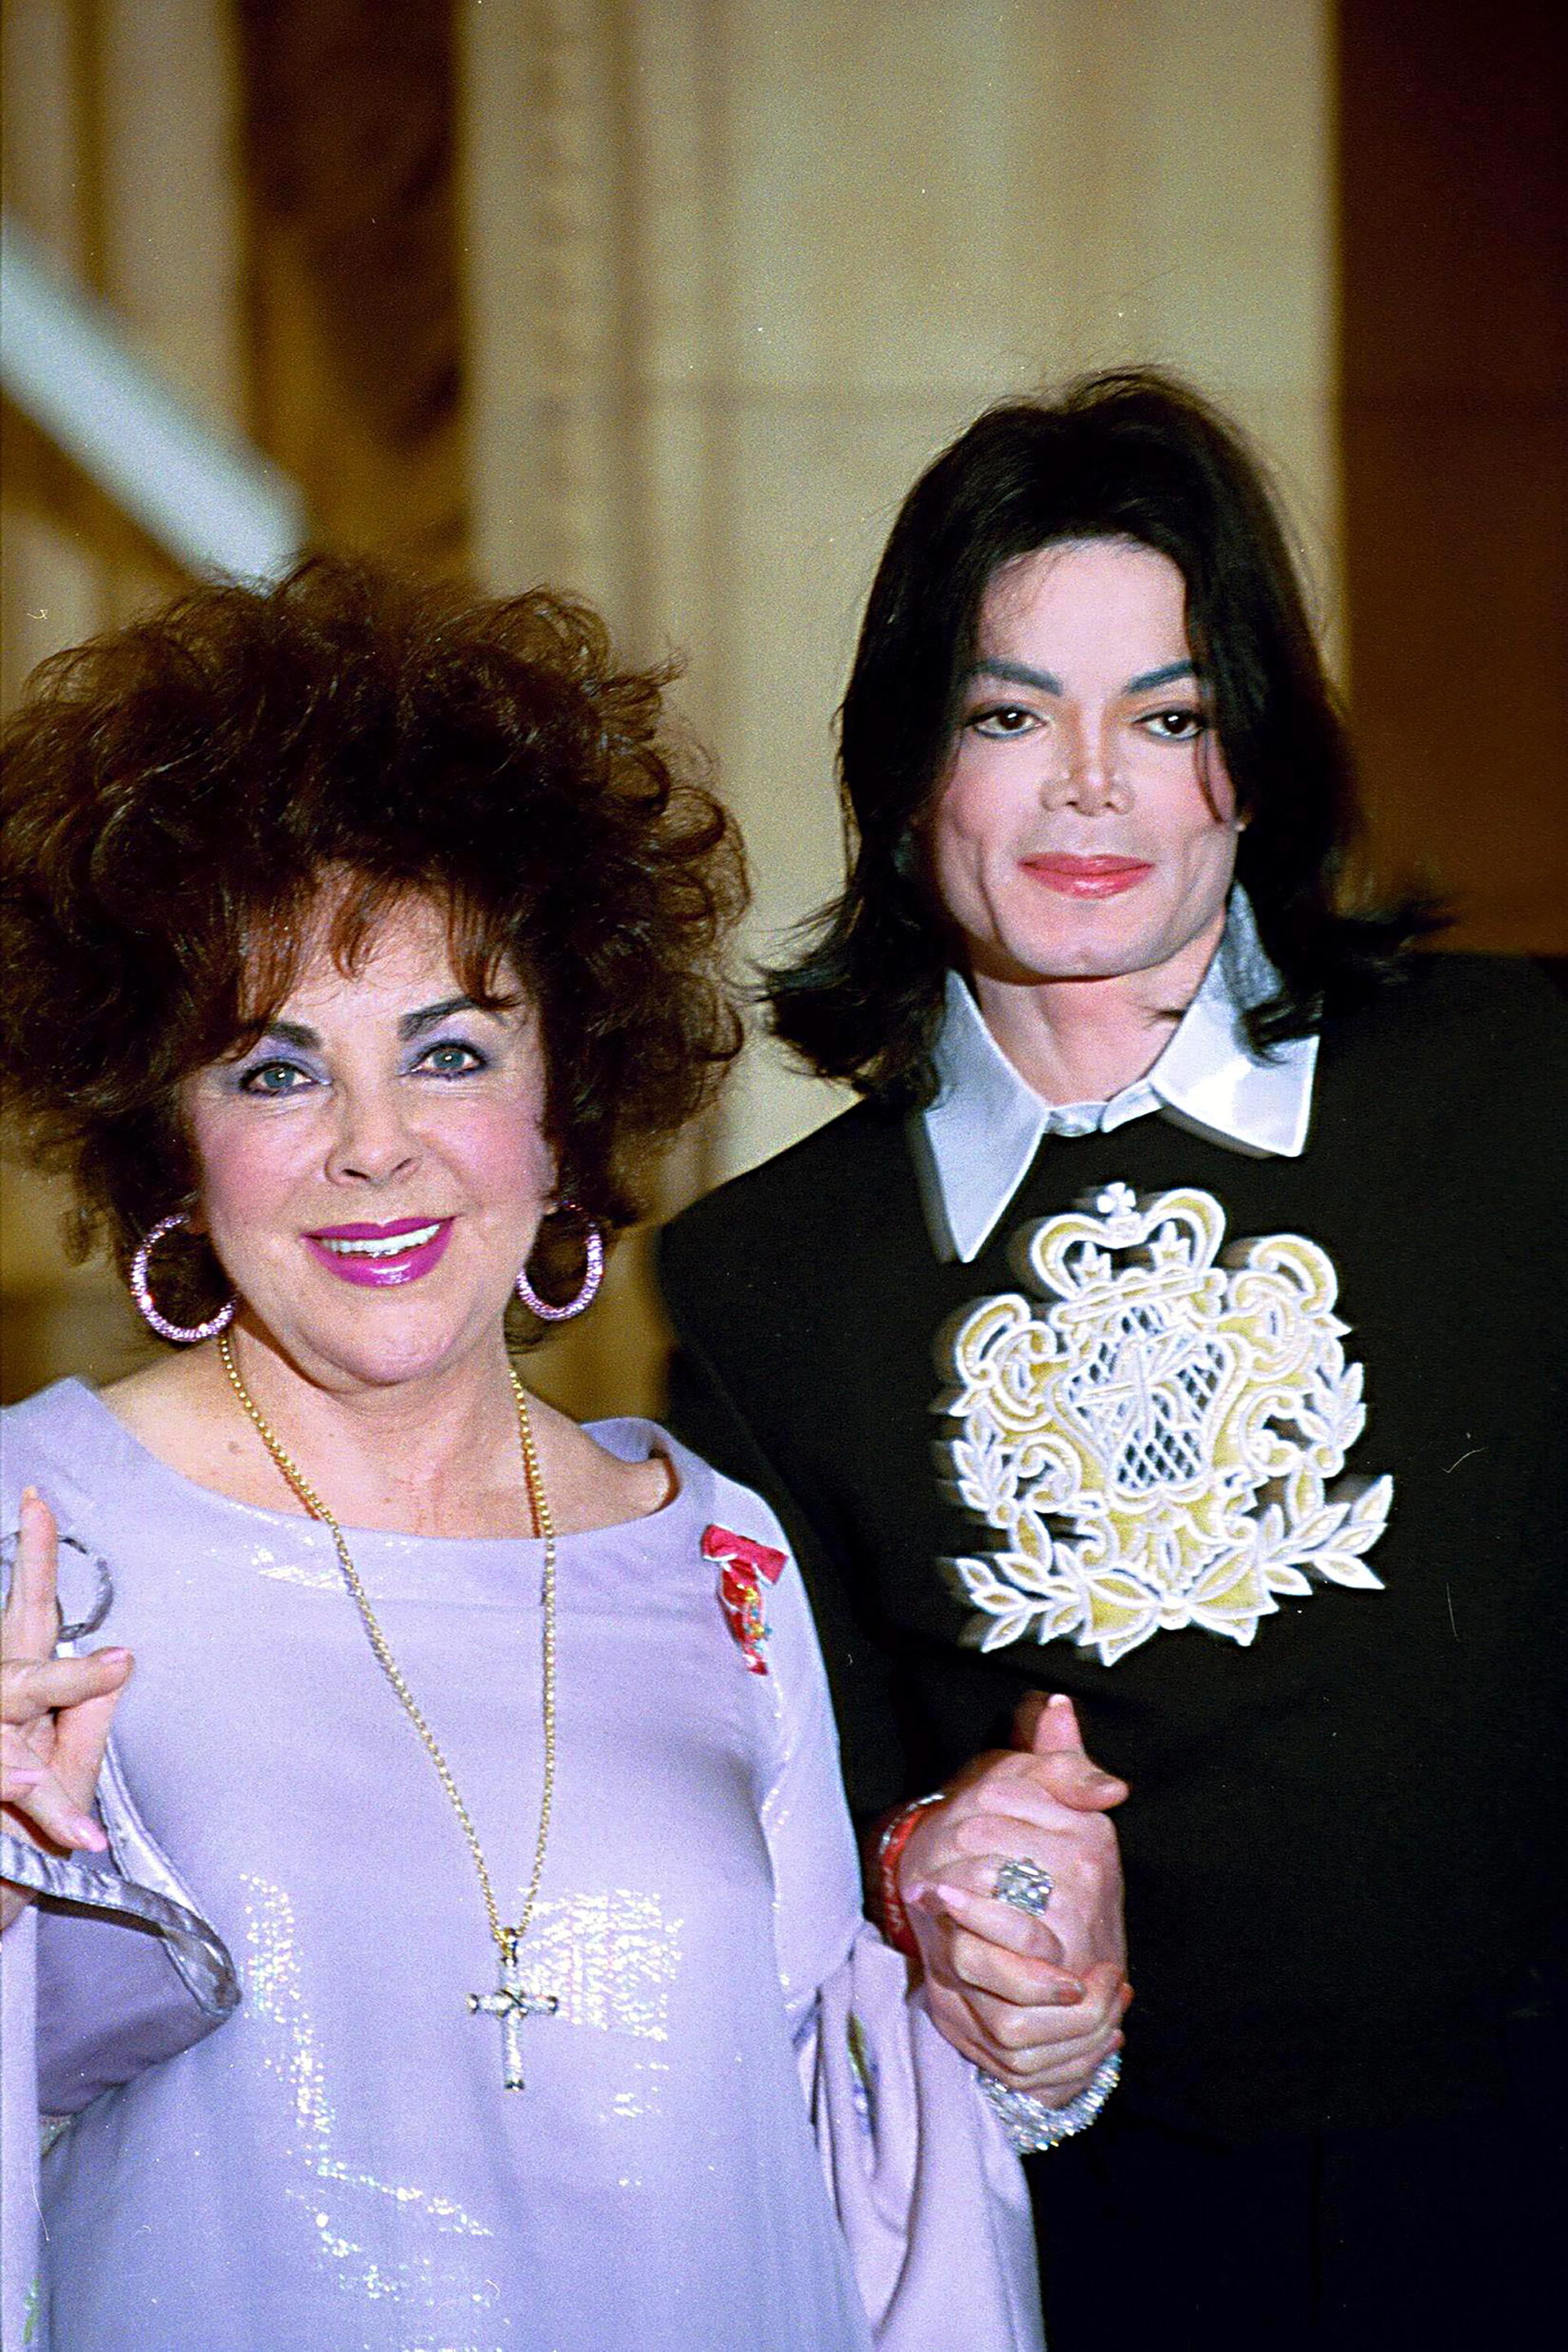 Con su gran amigo y confidente Michael Jackson. Liz lod efendió cuando fue acusado de abuso sexual (Julian Makey/Shutterstock)
